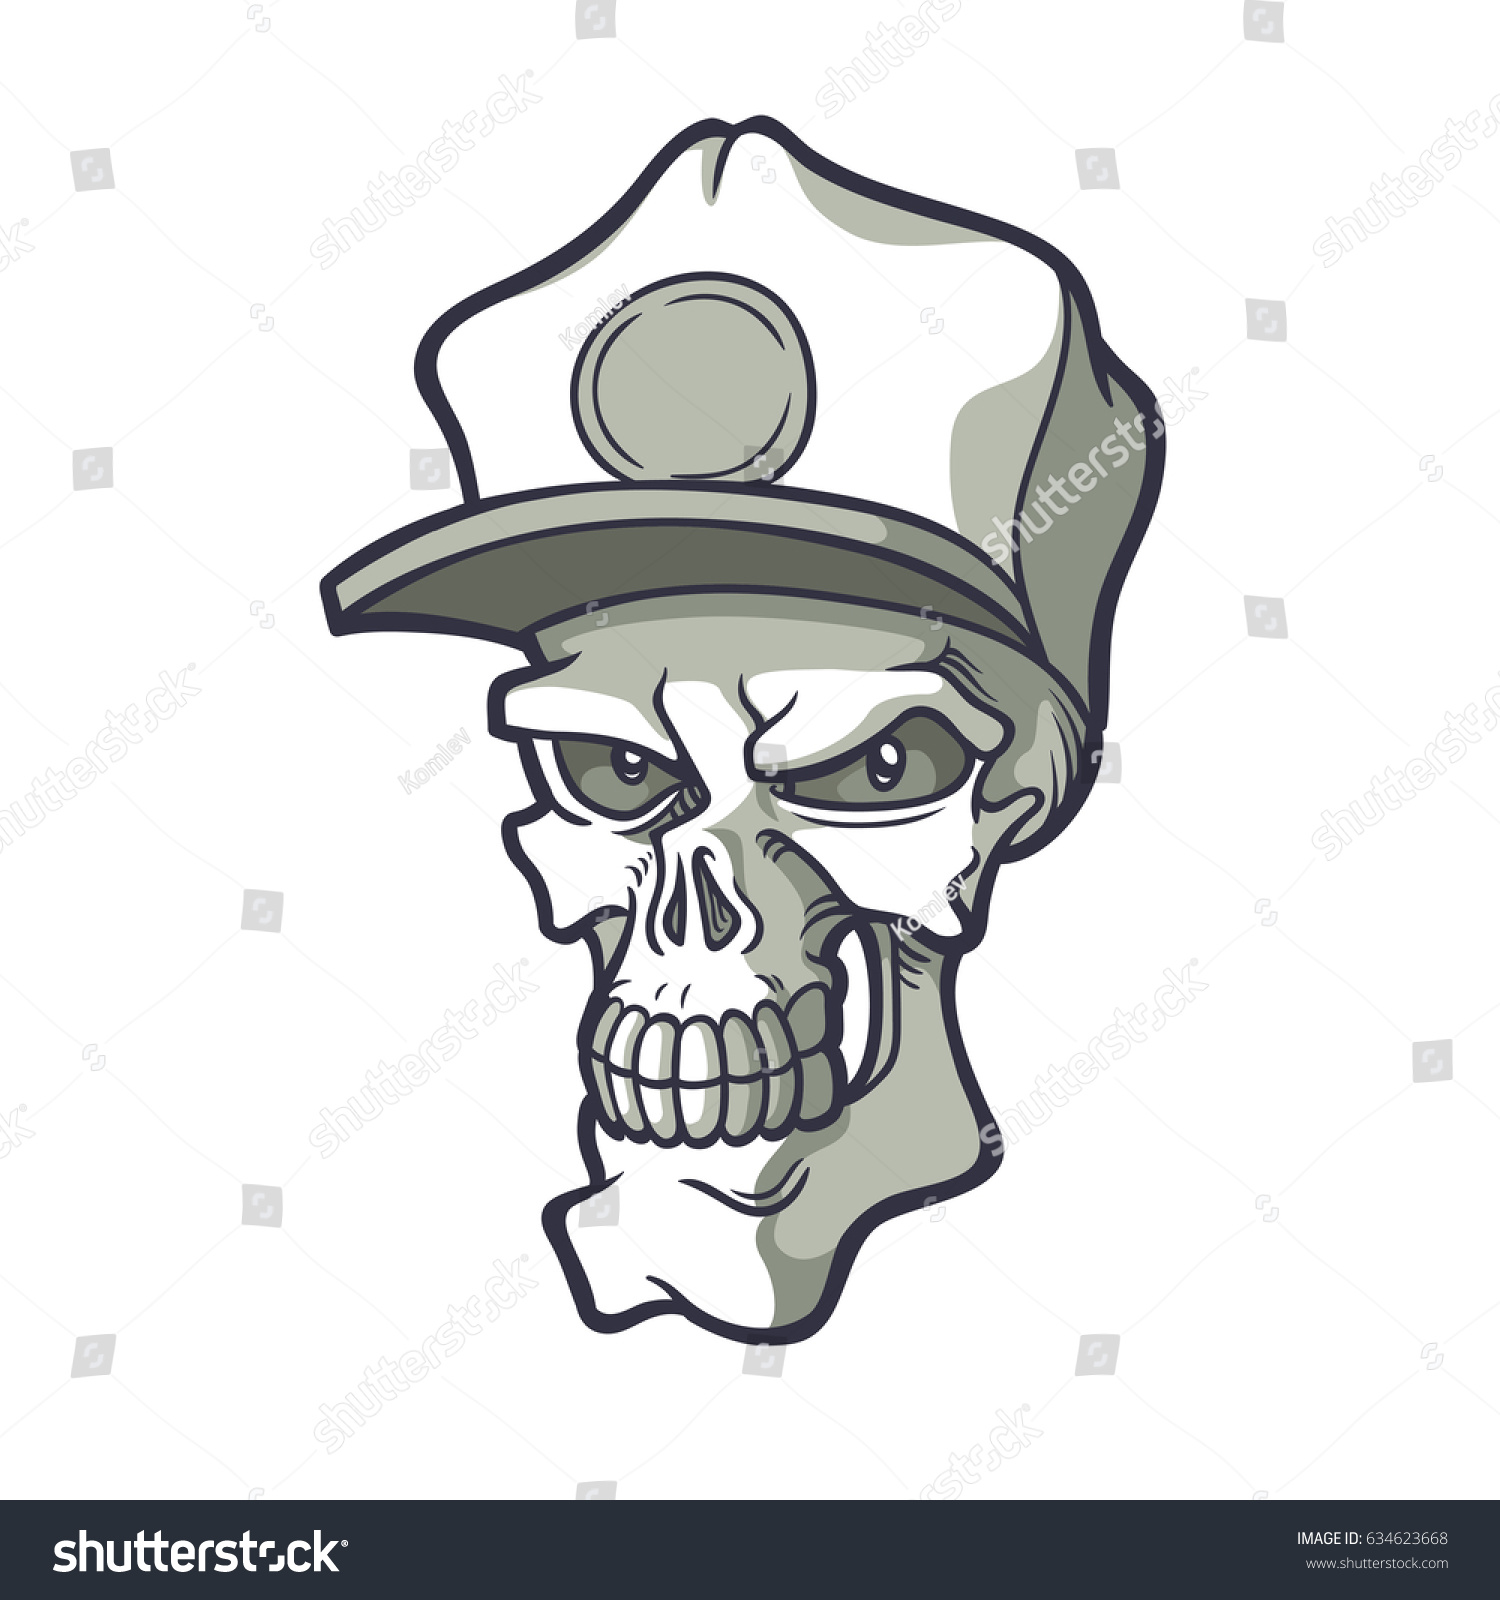 Gangster Vector Hand Drawn Illustration Skull Stock Vector 634623668 ...